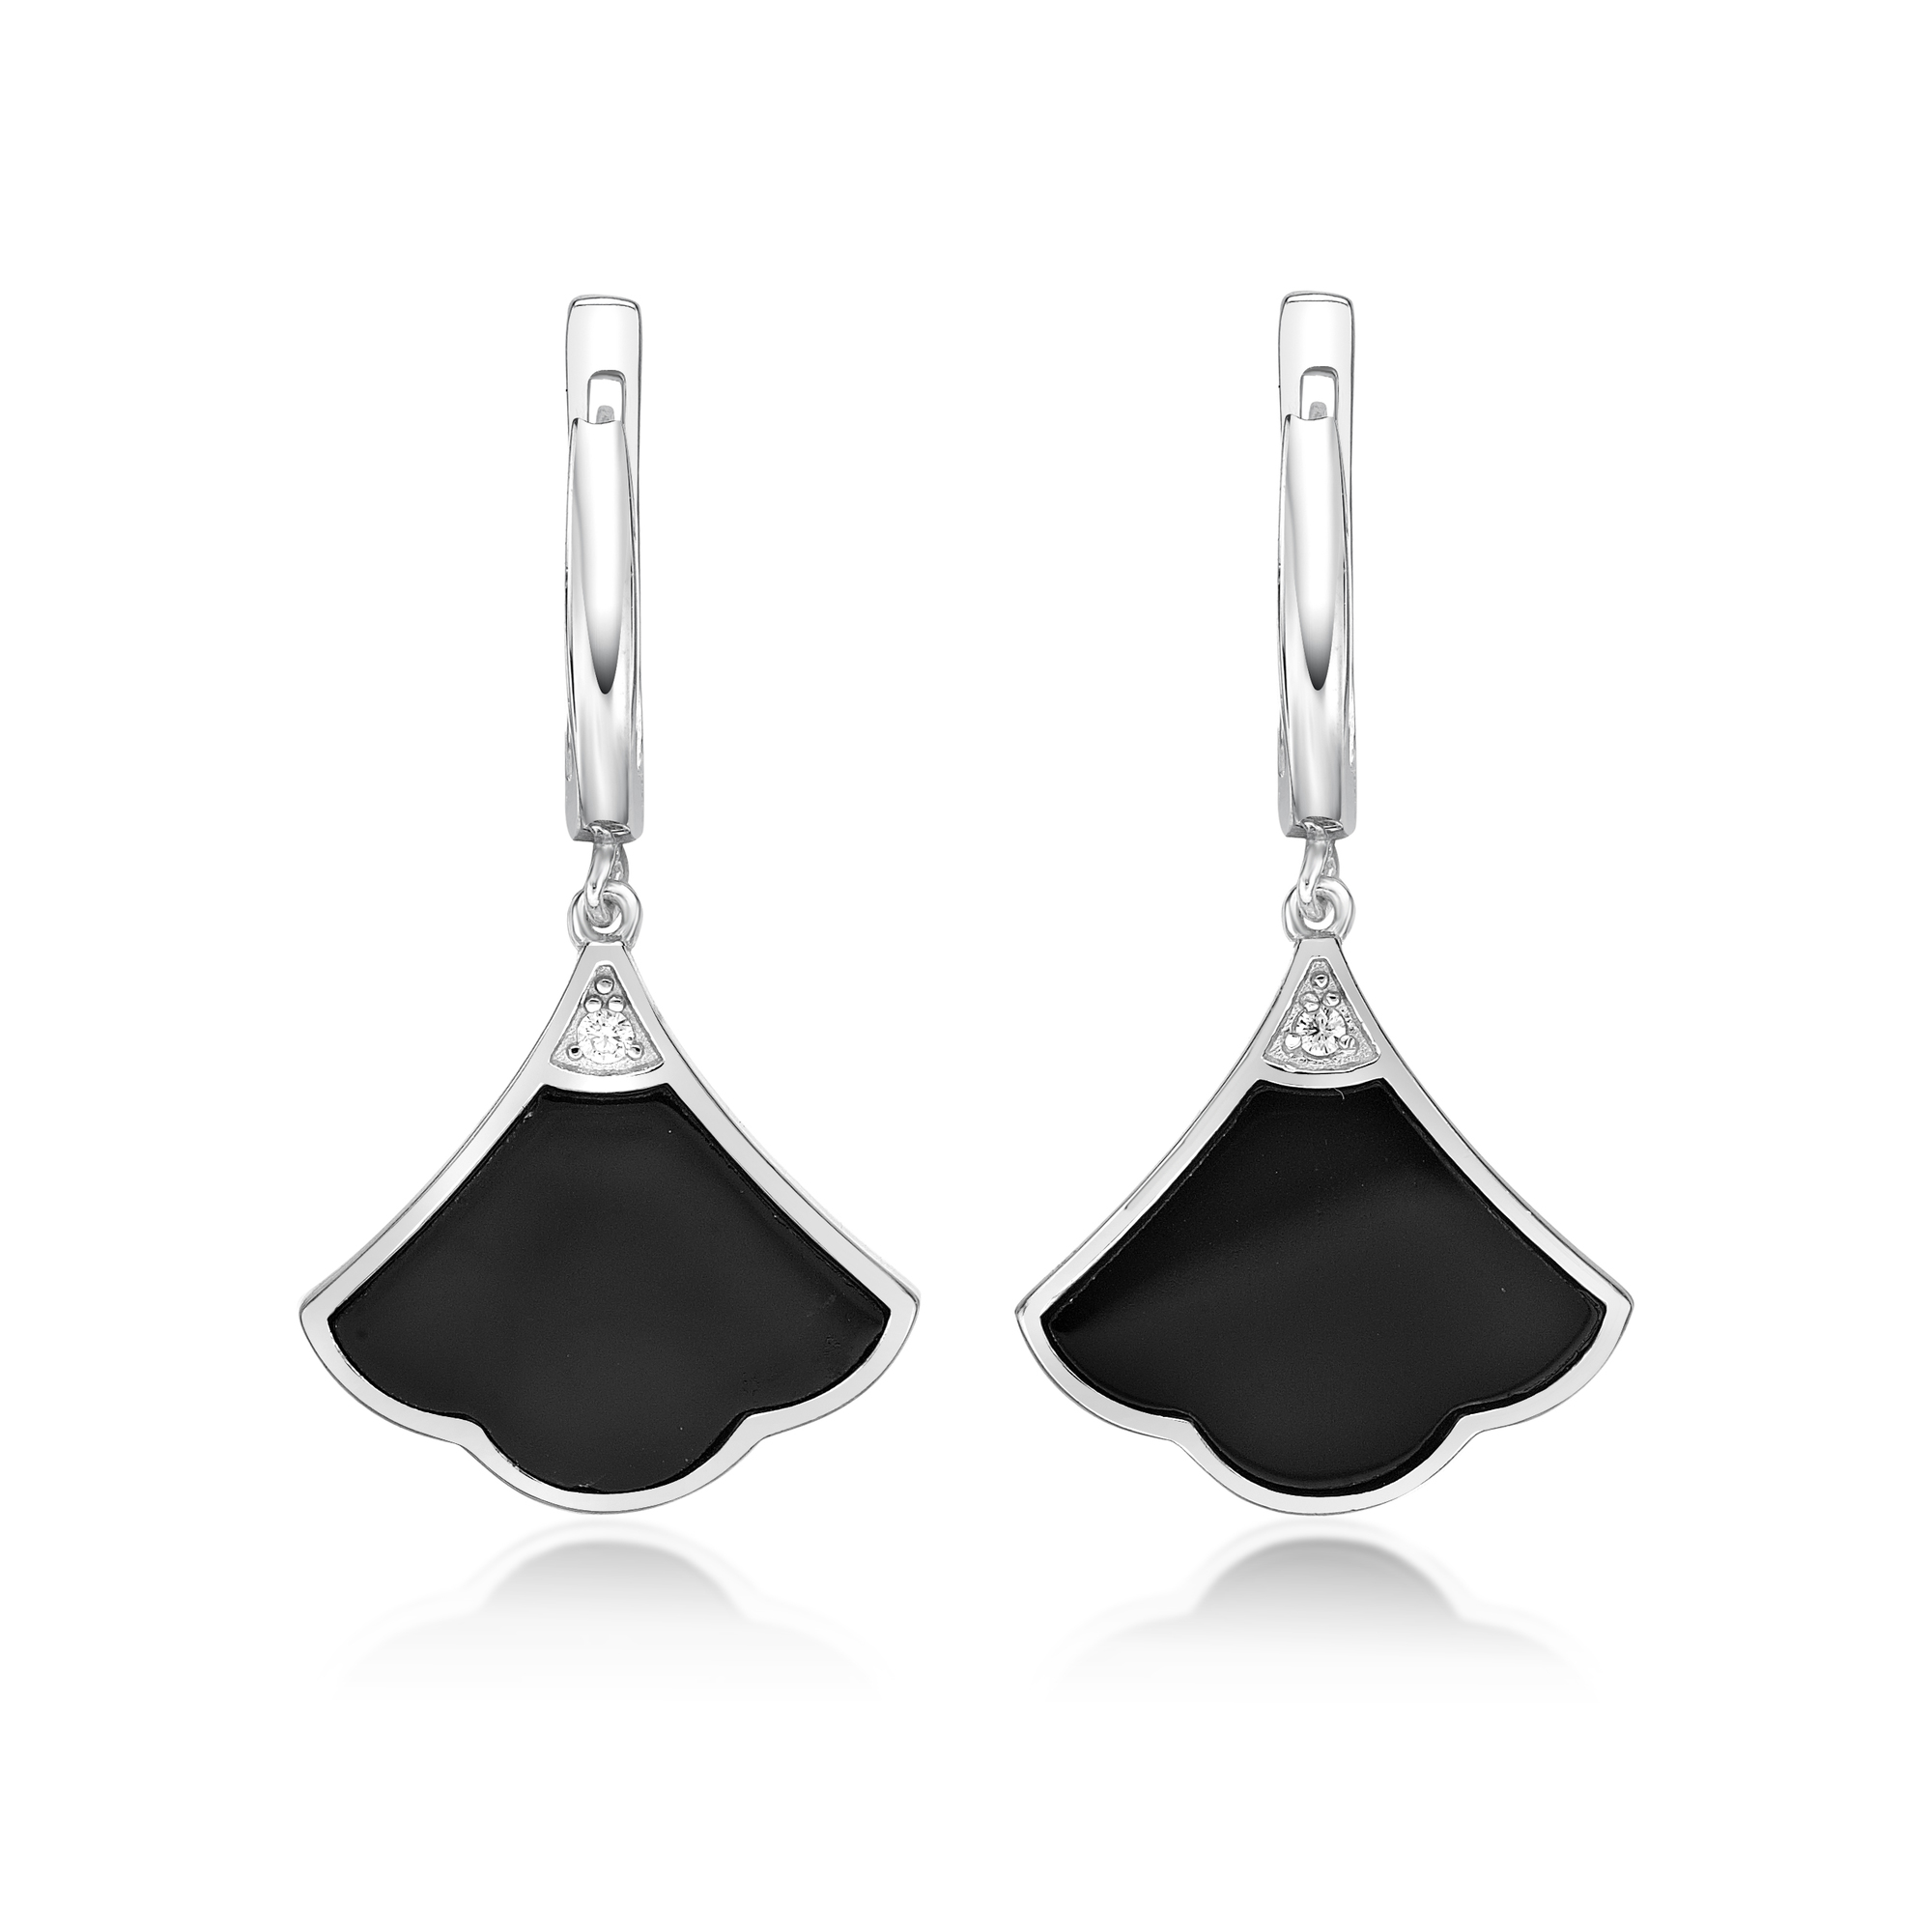 48837-earrings-fashion-jewelry-sterling-silver-black-onyx-48837-2.jpg